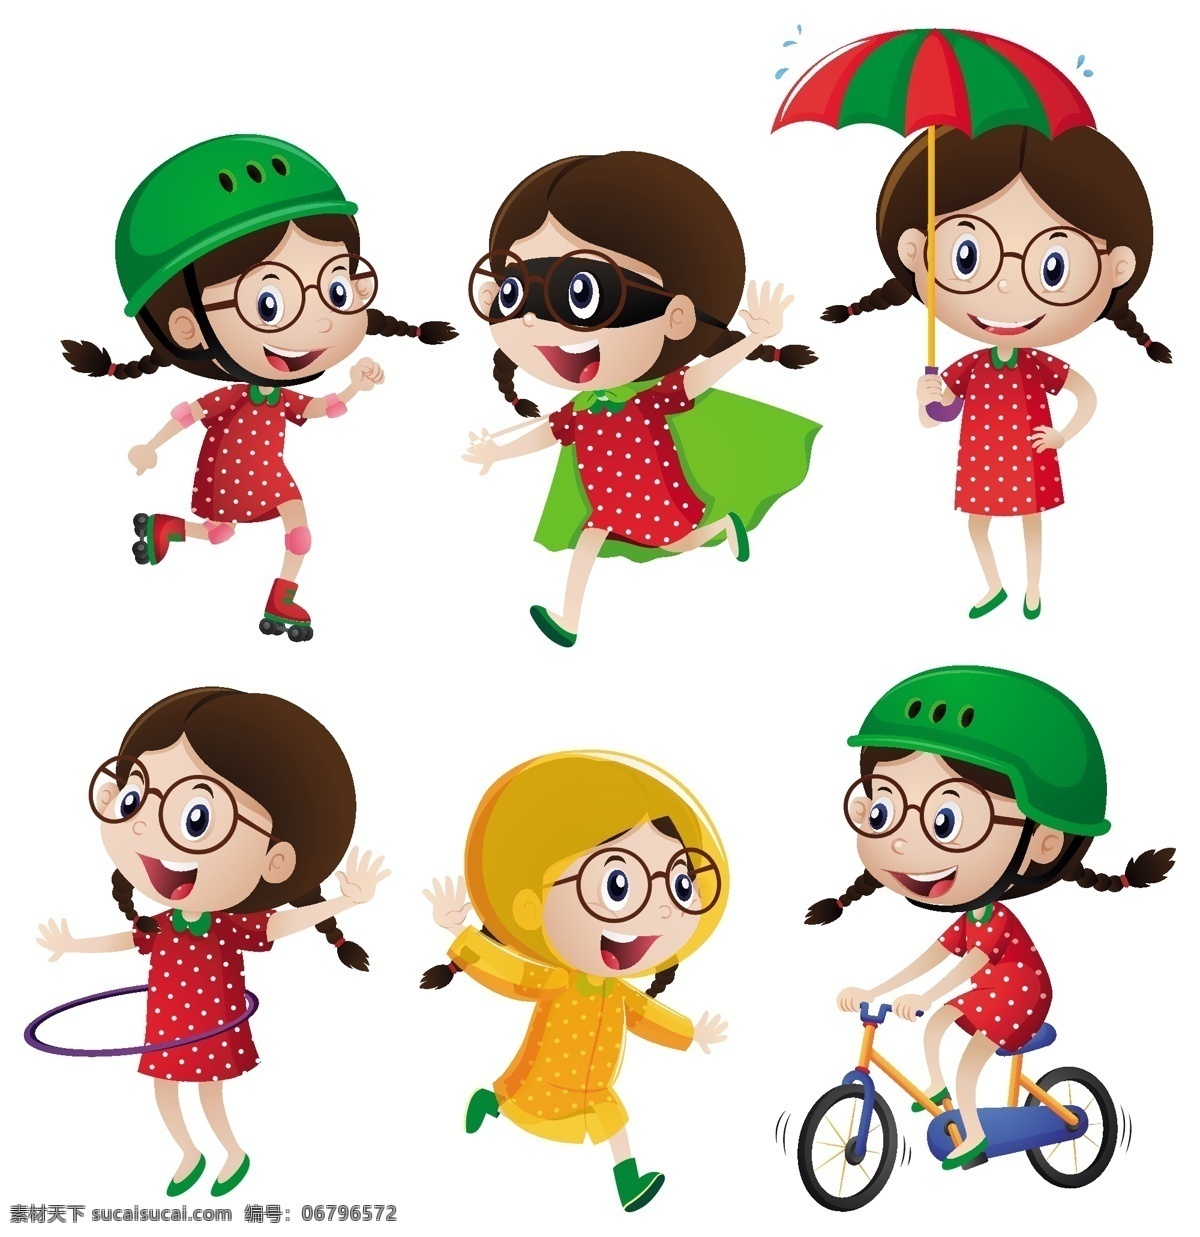 卡通女孩素材 节日儿童 节日 庆祝 开心 儿童 女孩 快乐 生日 儿童节 节日素材 卡通儿童 卡通设计